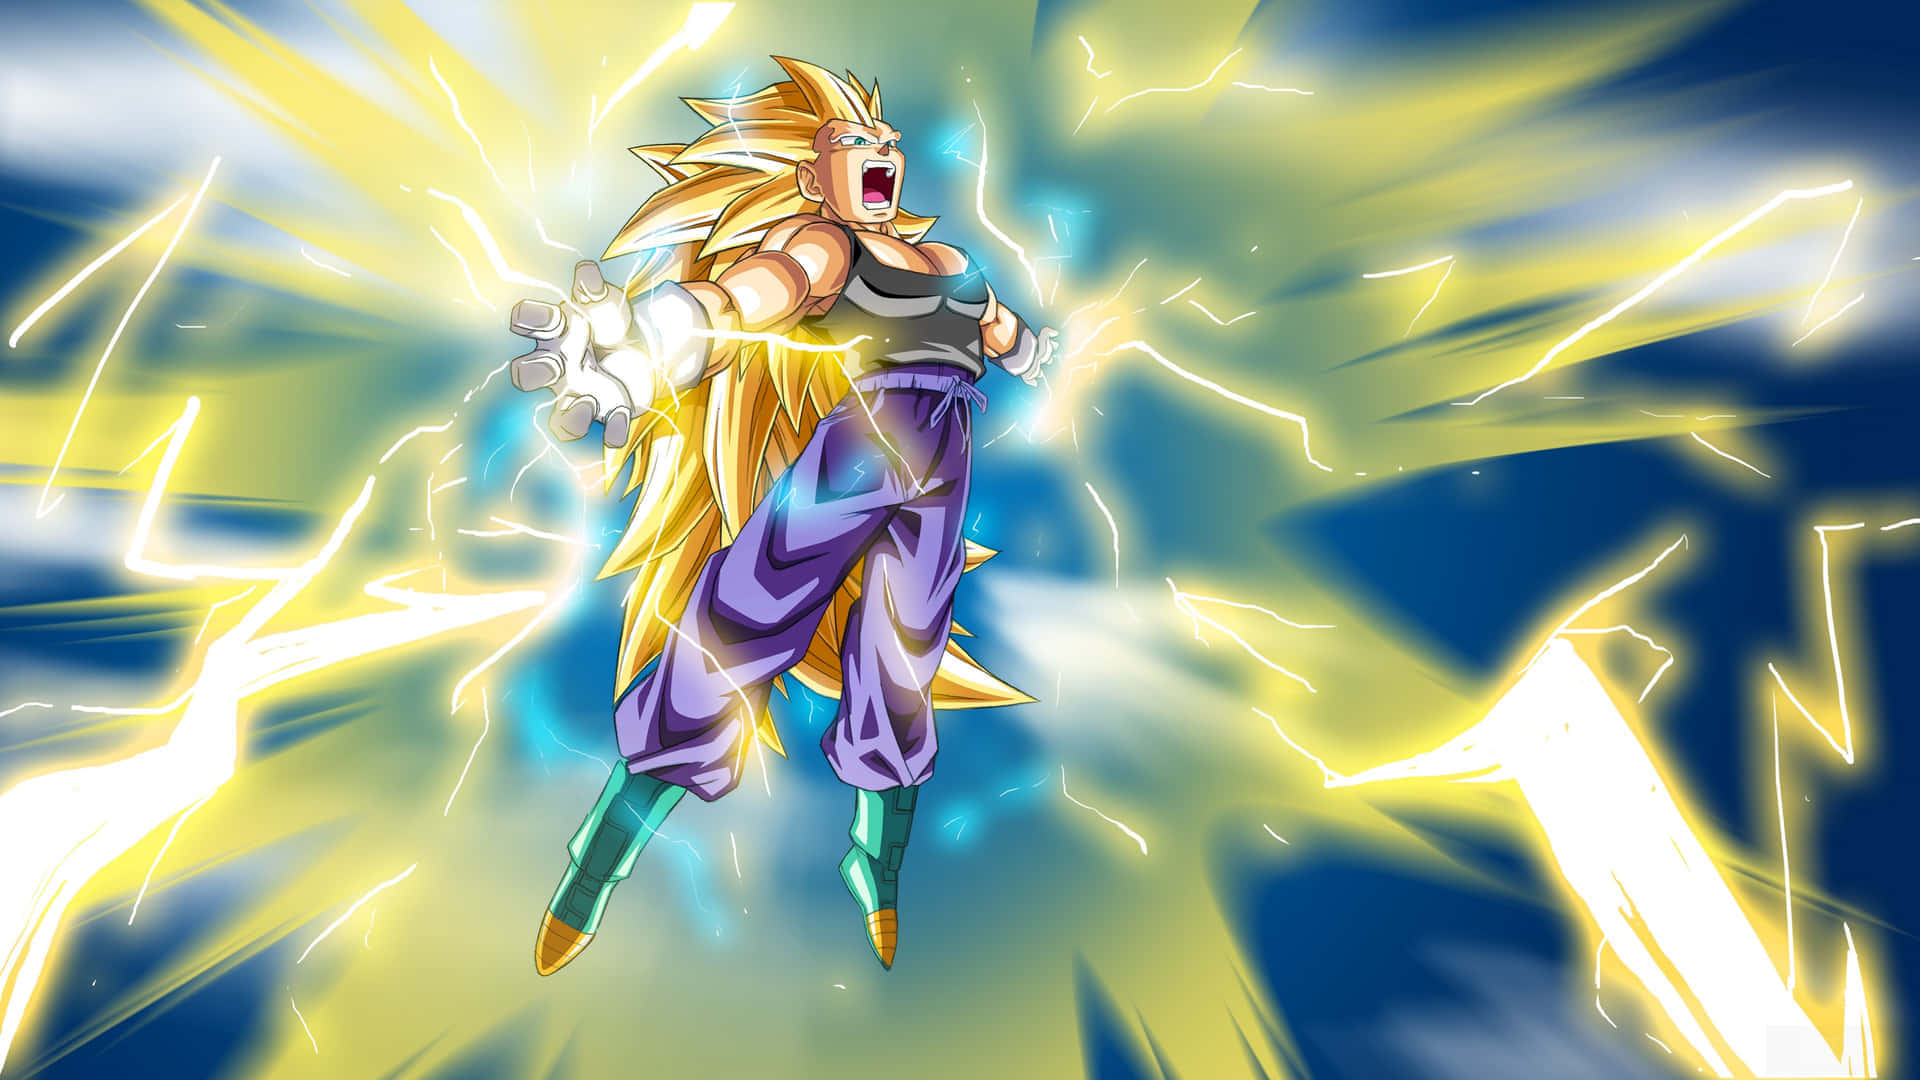 Majestic Vegeta Super Saiyan 3 Unleashing His Power Wallpaper